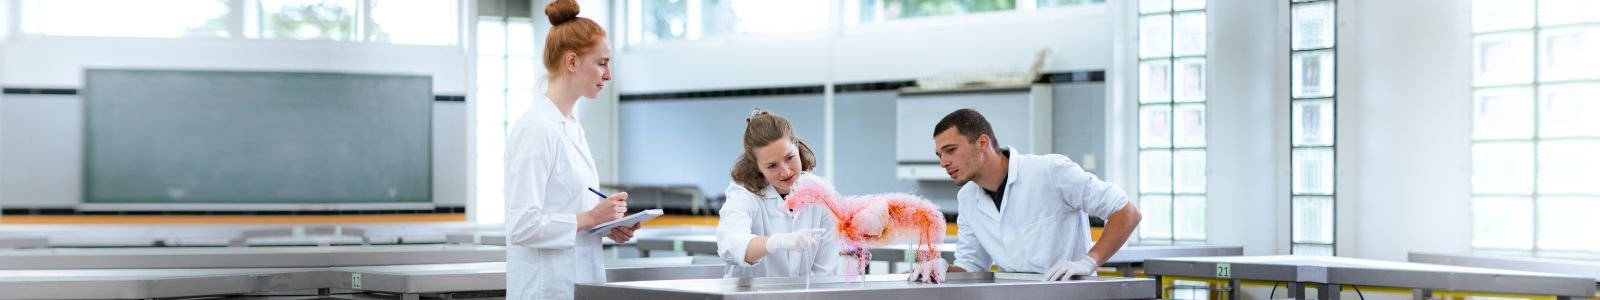 Drie studenten in witte jassen en met handschoenen aan kijken naar een object op de tafel